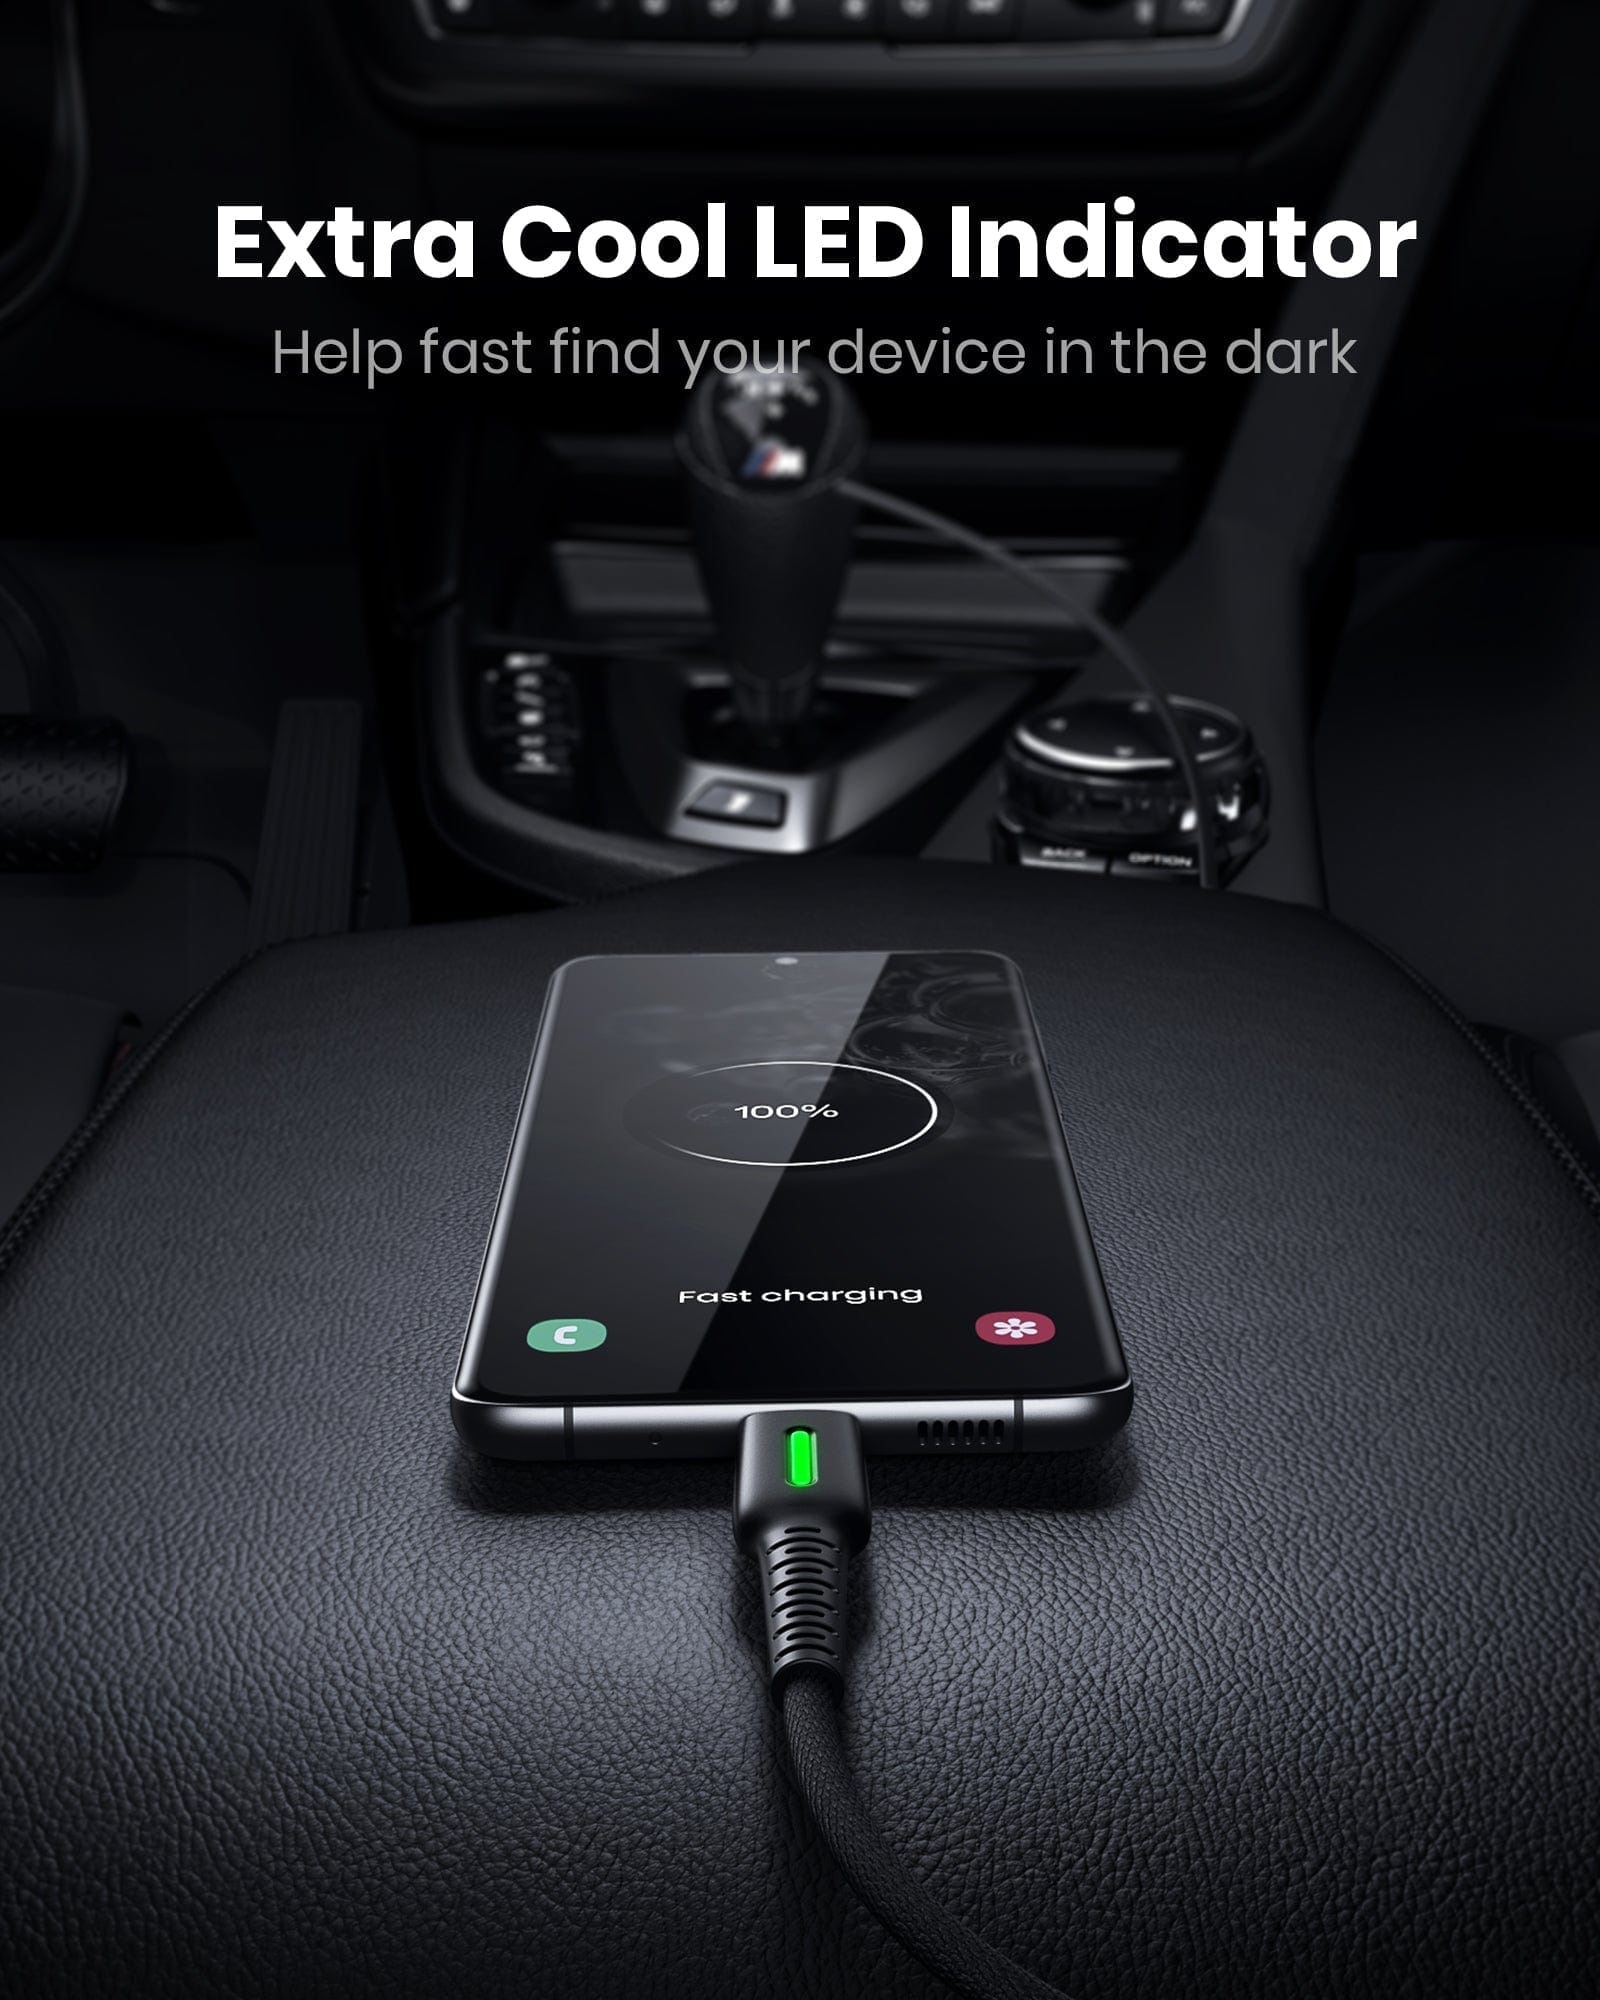 Extra Cool LED Indicator